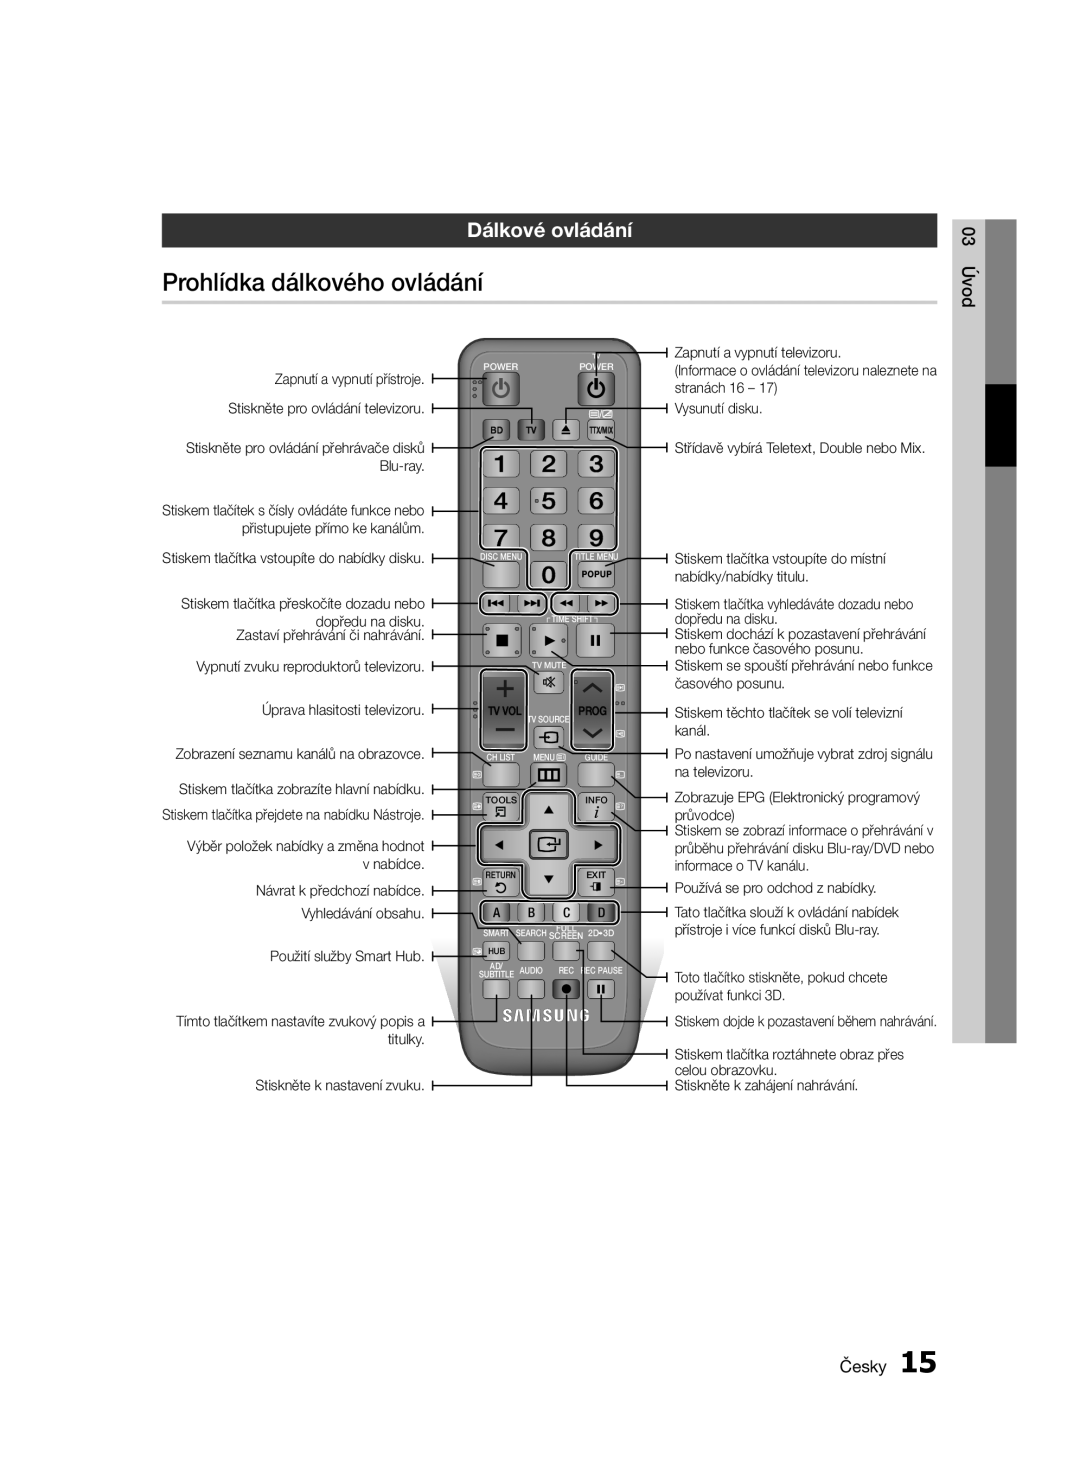 Samsung BD-E6300/EN manual Prohlídka dálkového ovládání, Dálkové ovládání, 03 Úvod, Česky 